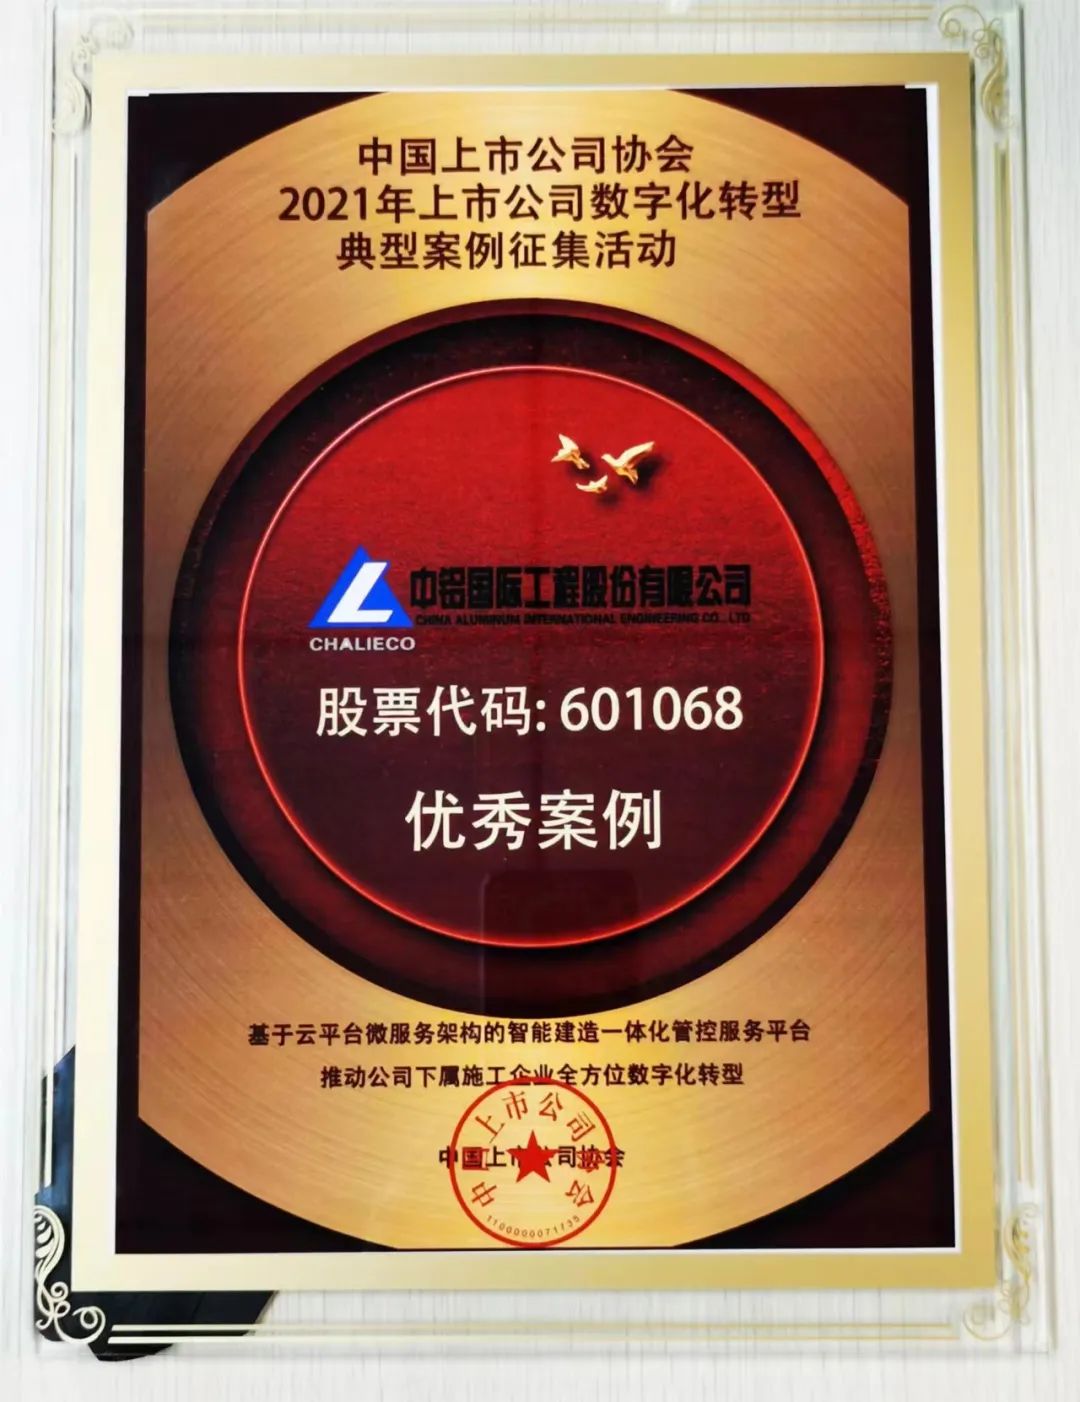 中铝国际获评中国上市公司协会数字化转型“优秀案例”